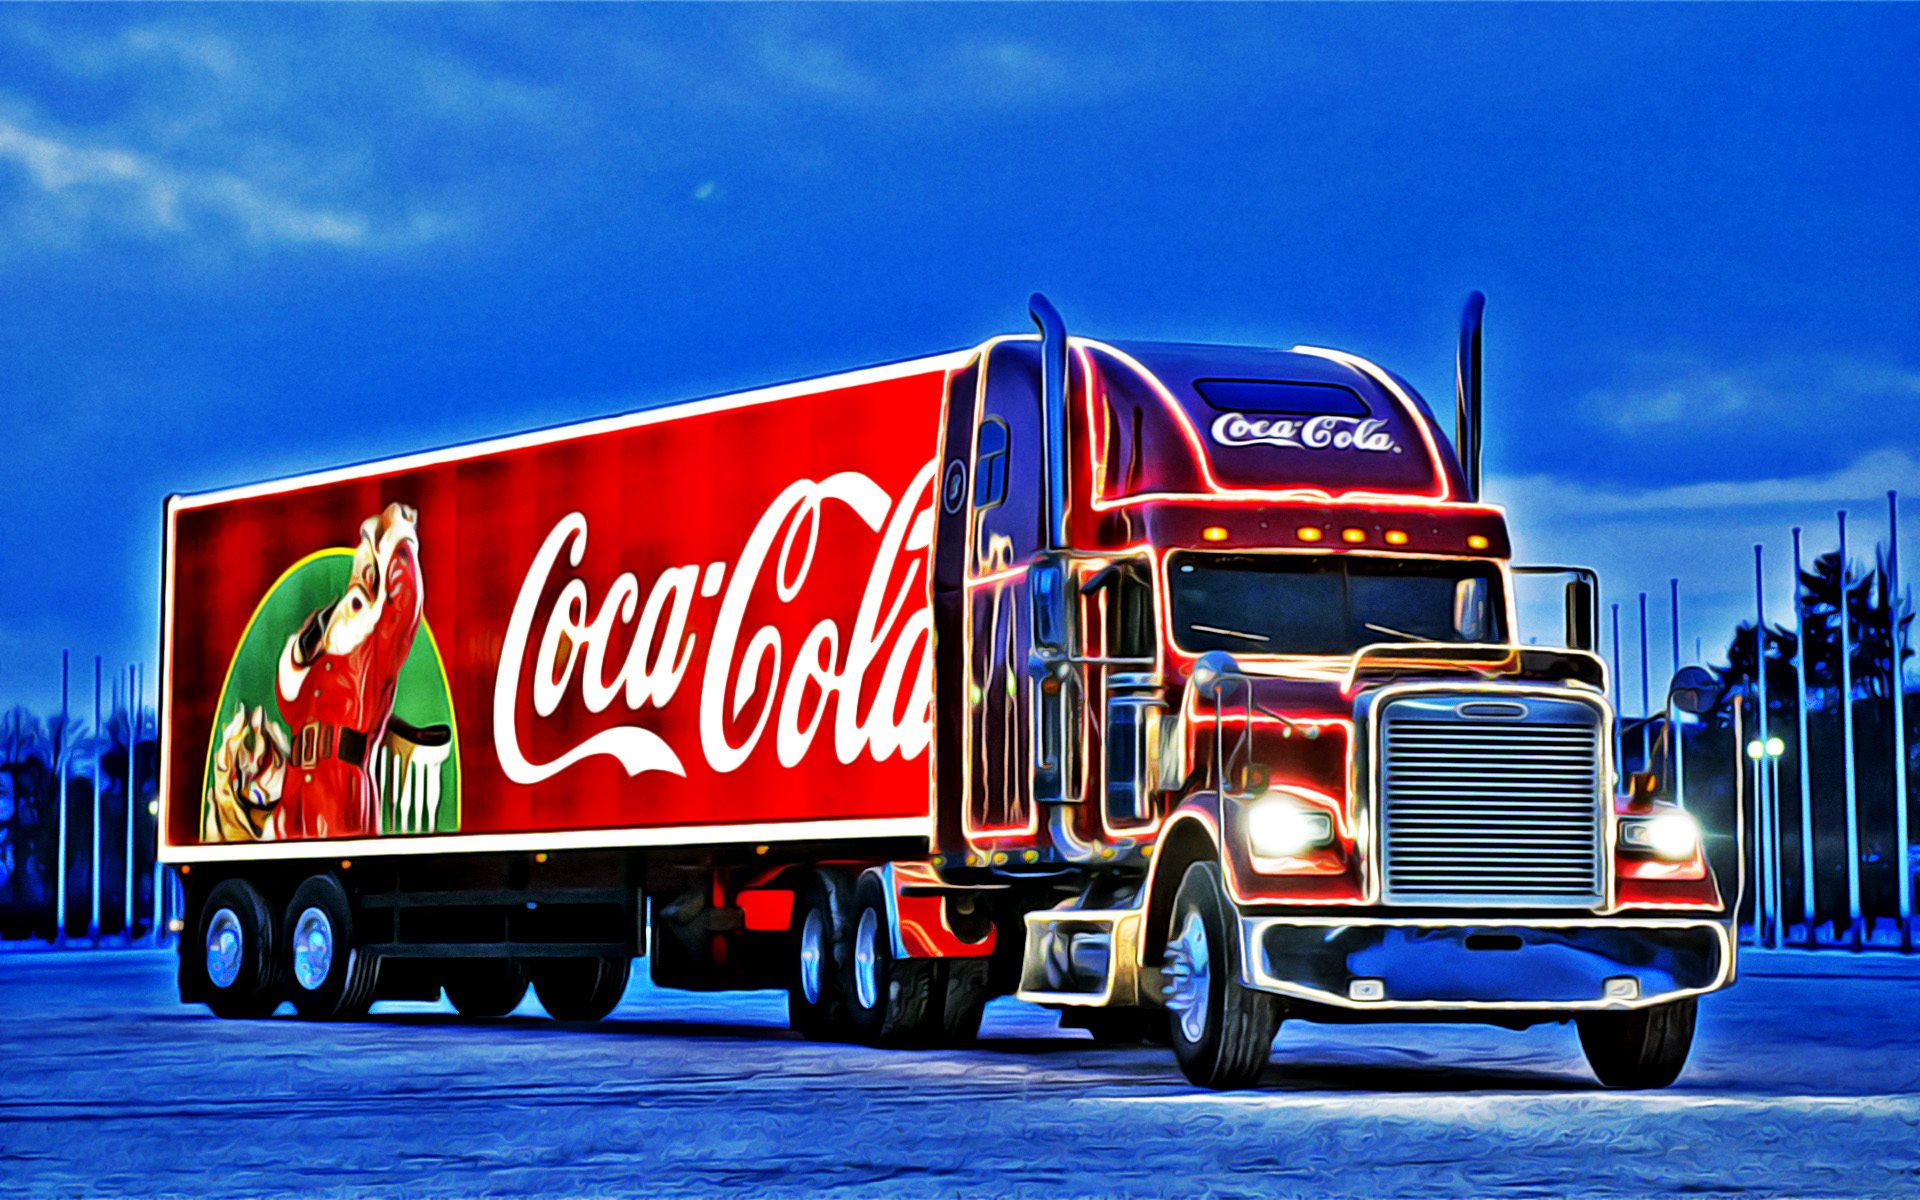 ダウンロード画像 クリスマスのトラック 作品 コカ コーラのクリスマストラック メリークリスマス 謹賀新年 コカ コーラ トラック Freightliner 画面の解像度 19x10 壁紙デスクトップ上